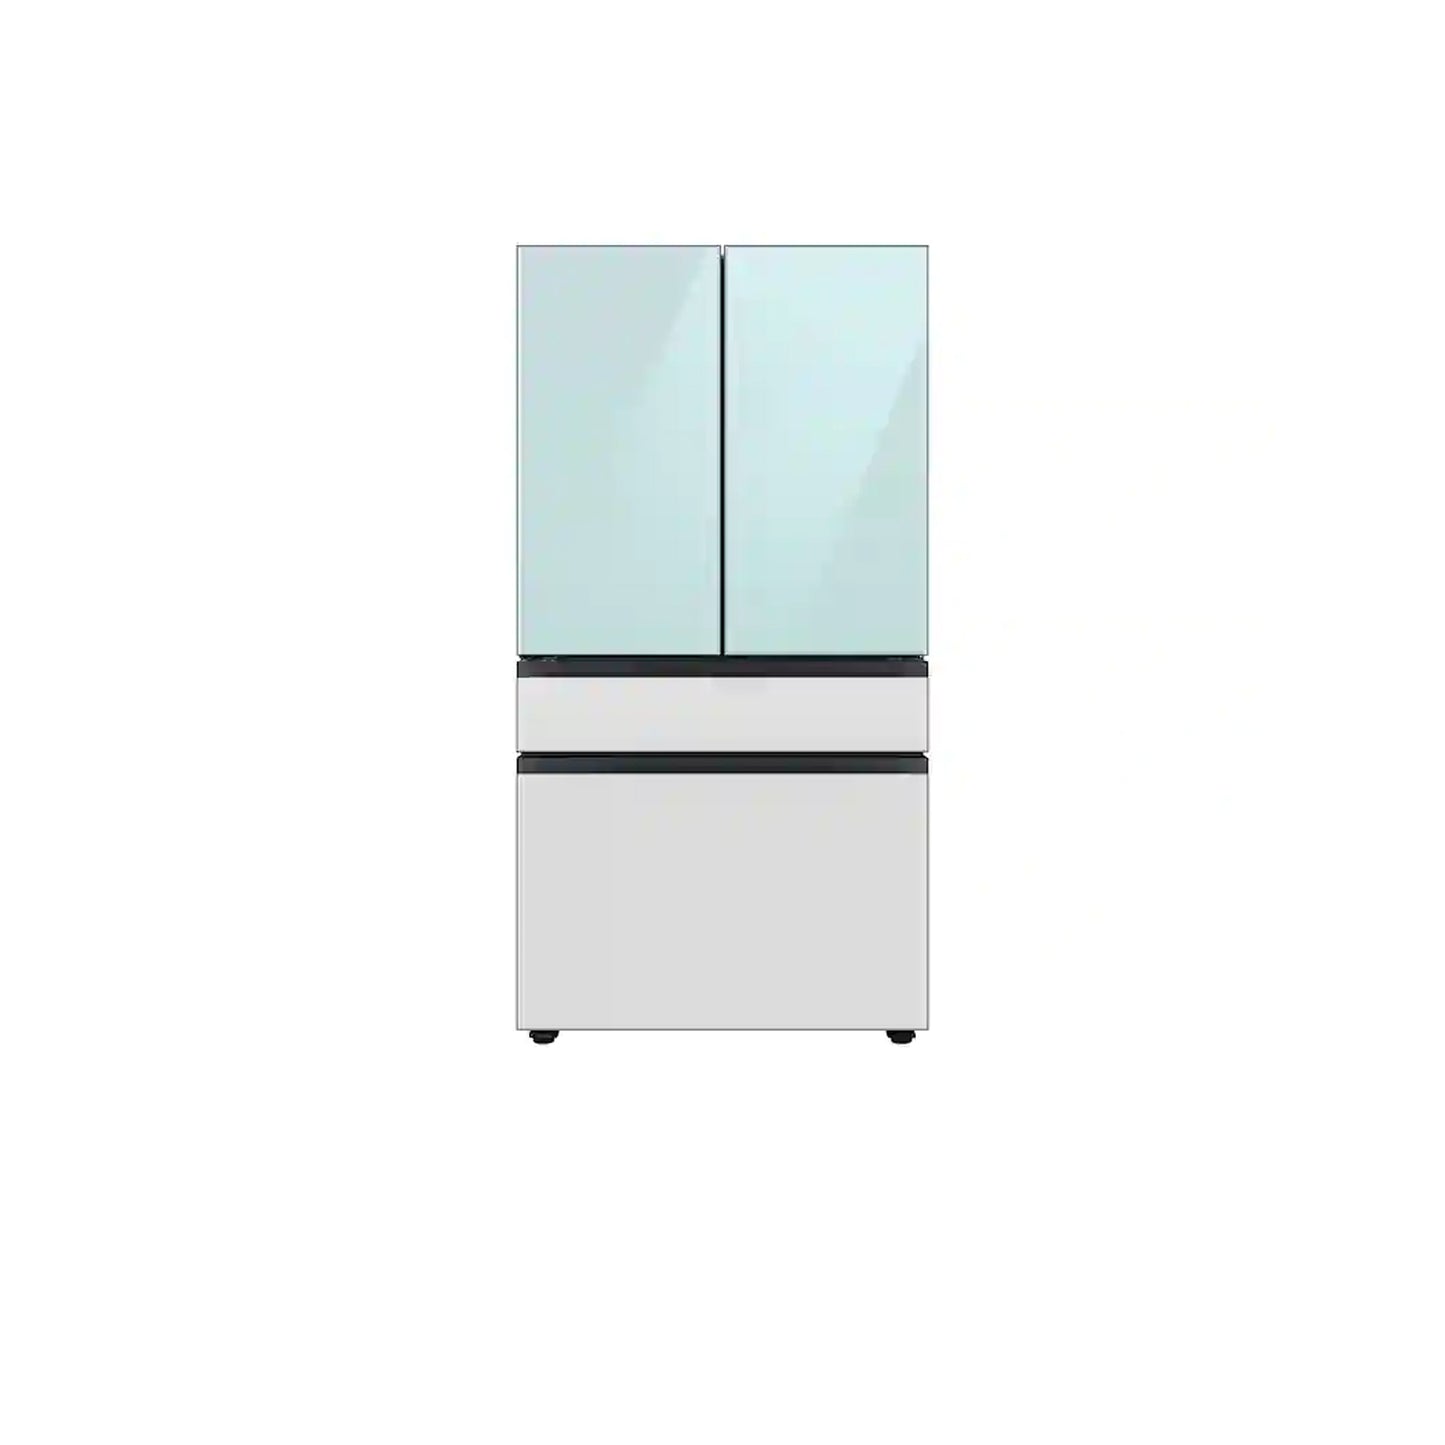 Bespoke 4-Door French Door Refrigerator (23 cu. ft.) with Customizable Door Panel Colors and Beverage Center™ in Sunrise Yellow Glass.